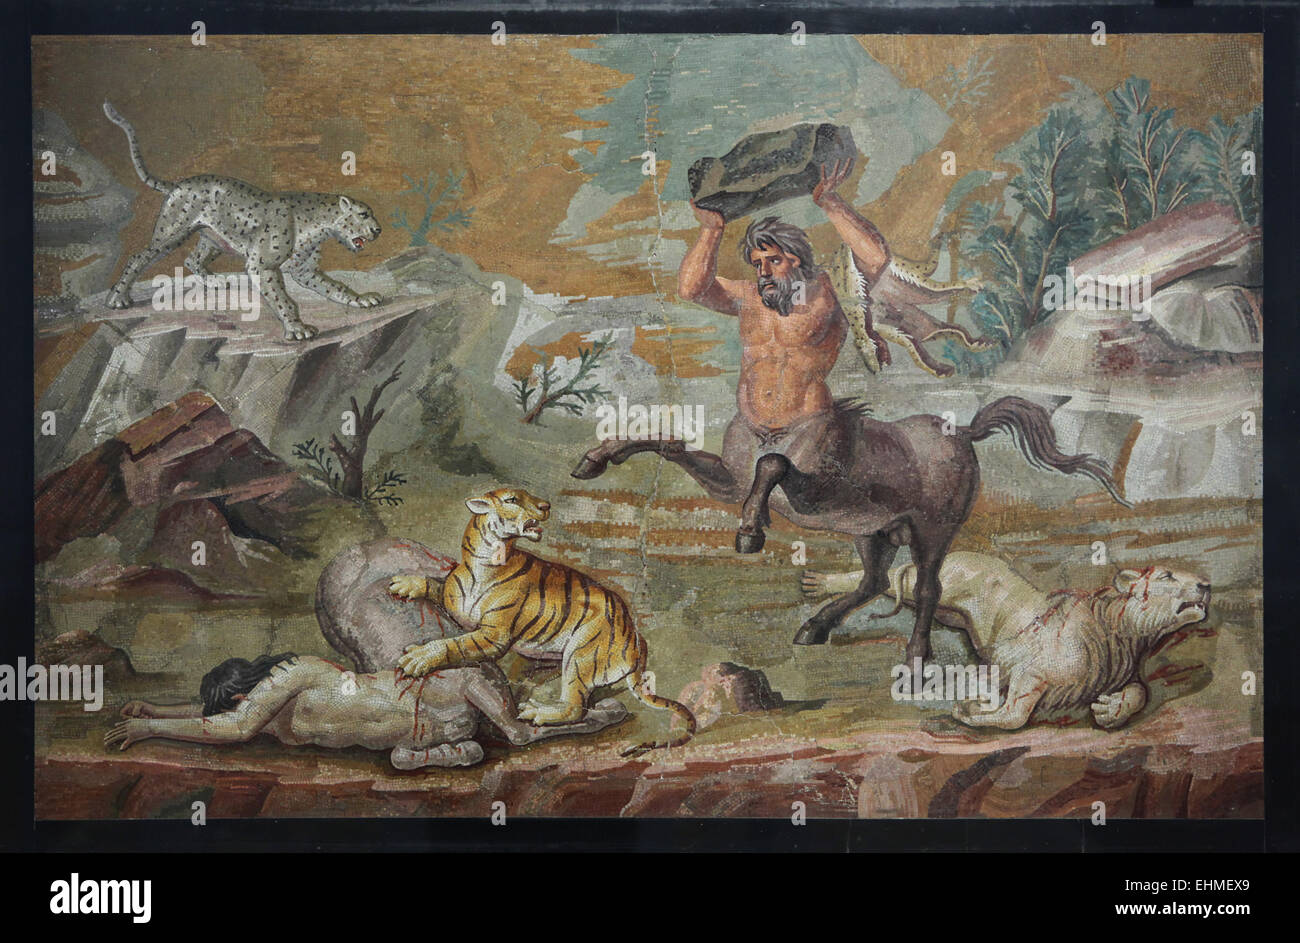 Deux chats combats Centaures de proie. Mosaïque romaine de la Villa Adriana, Tivoli, autour de 130 AD. Altes Museum, Berlin, Allemagne. Banque D'Images